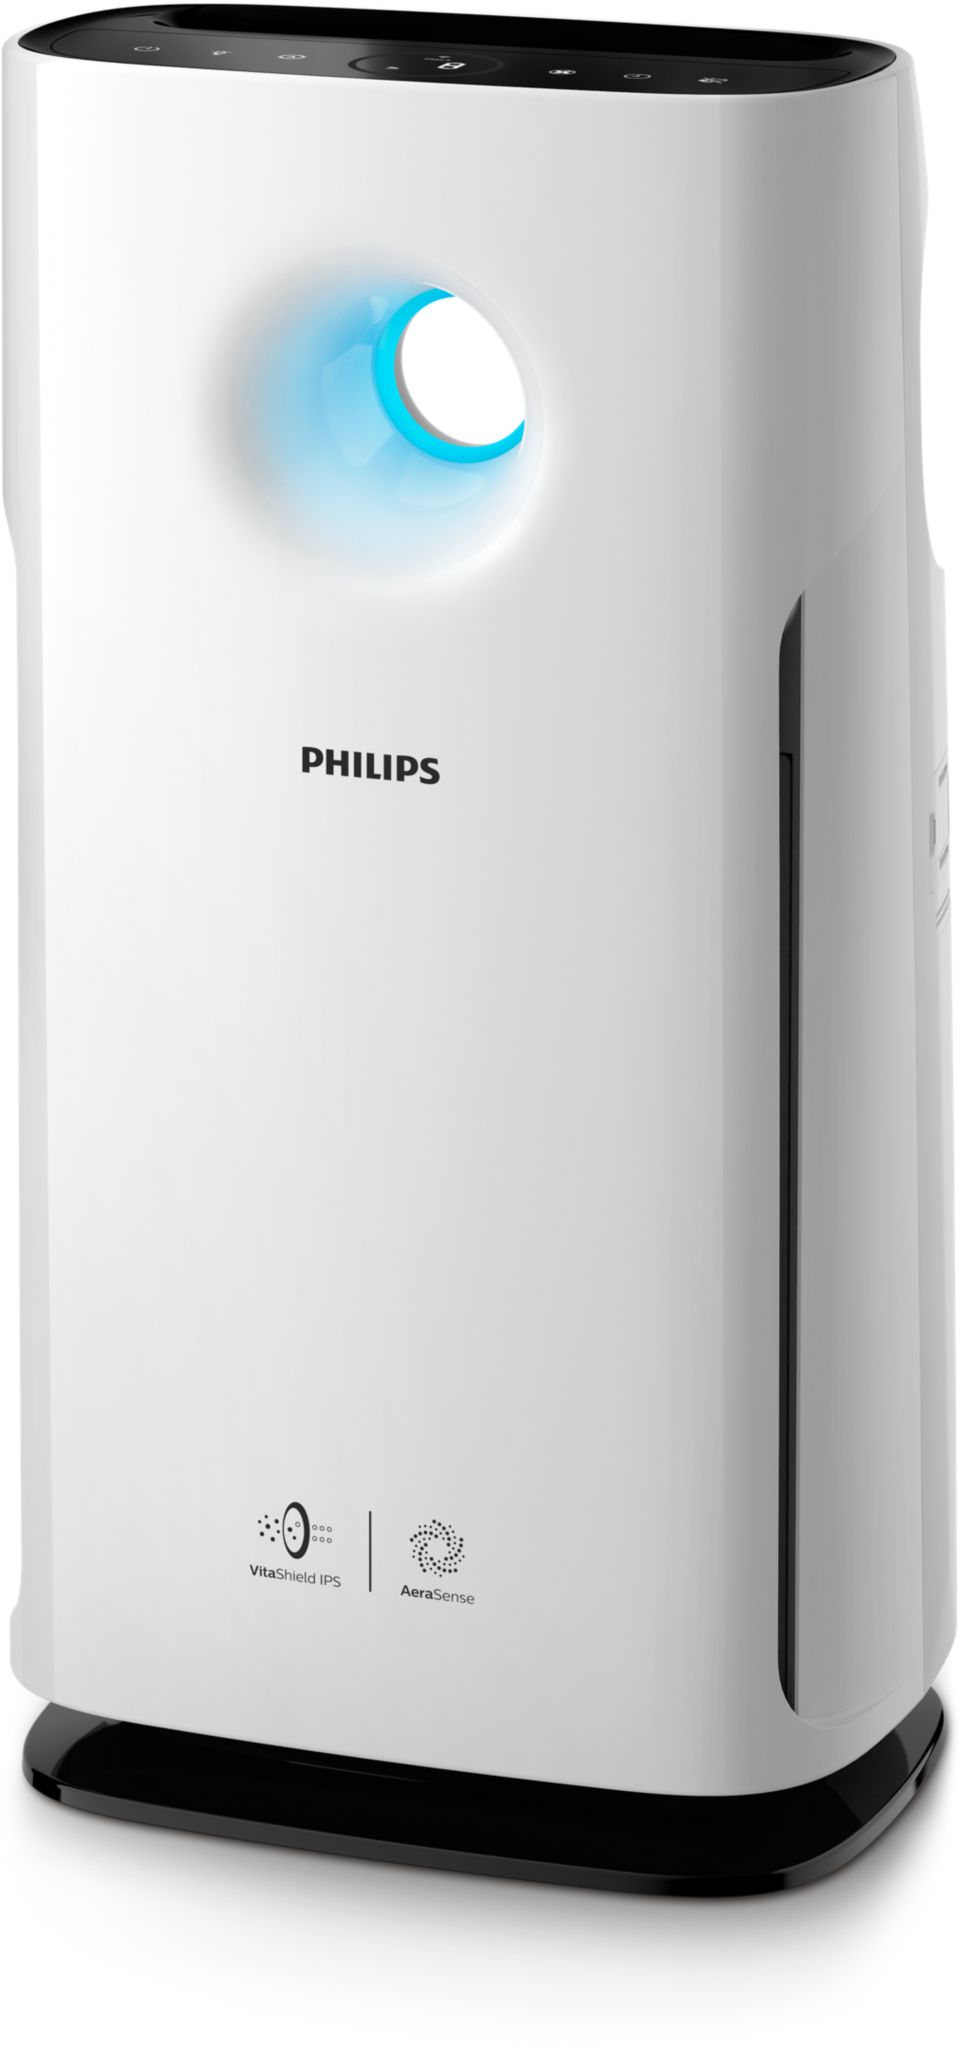 Philips - Cashback purificateur d'air, Promotions